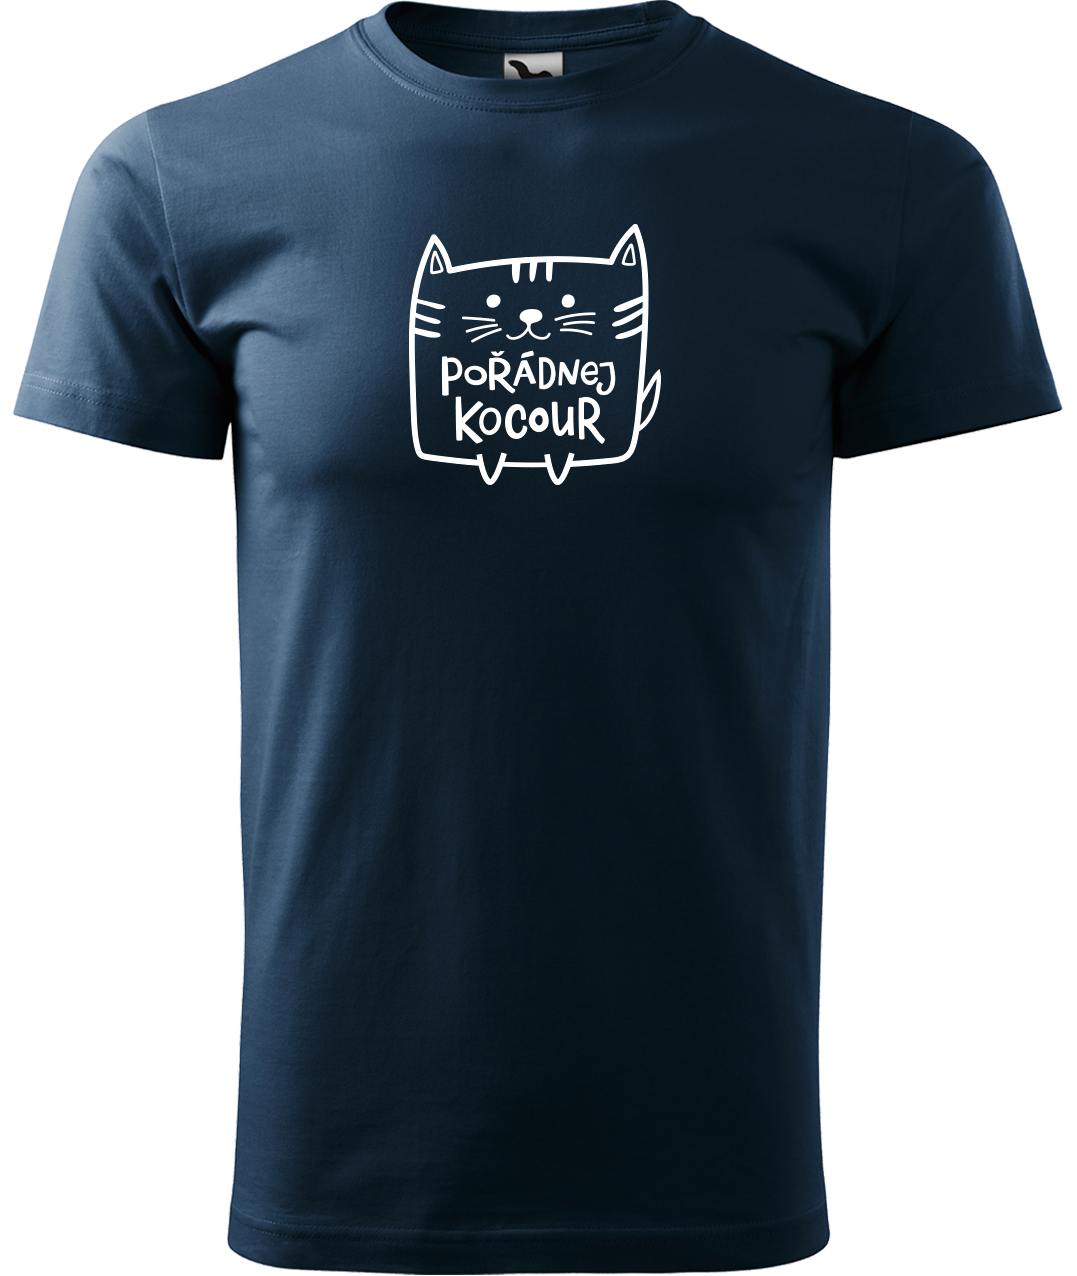 Pánské tričko s kočkou - Pořádnej kocour Velikost: L, Barva: Námořní modrá (02)